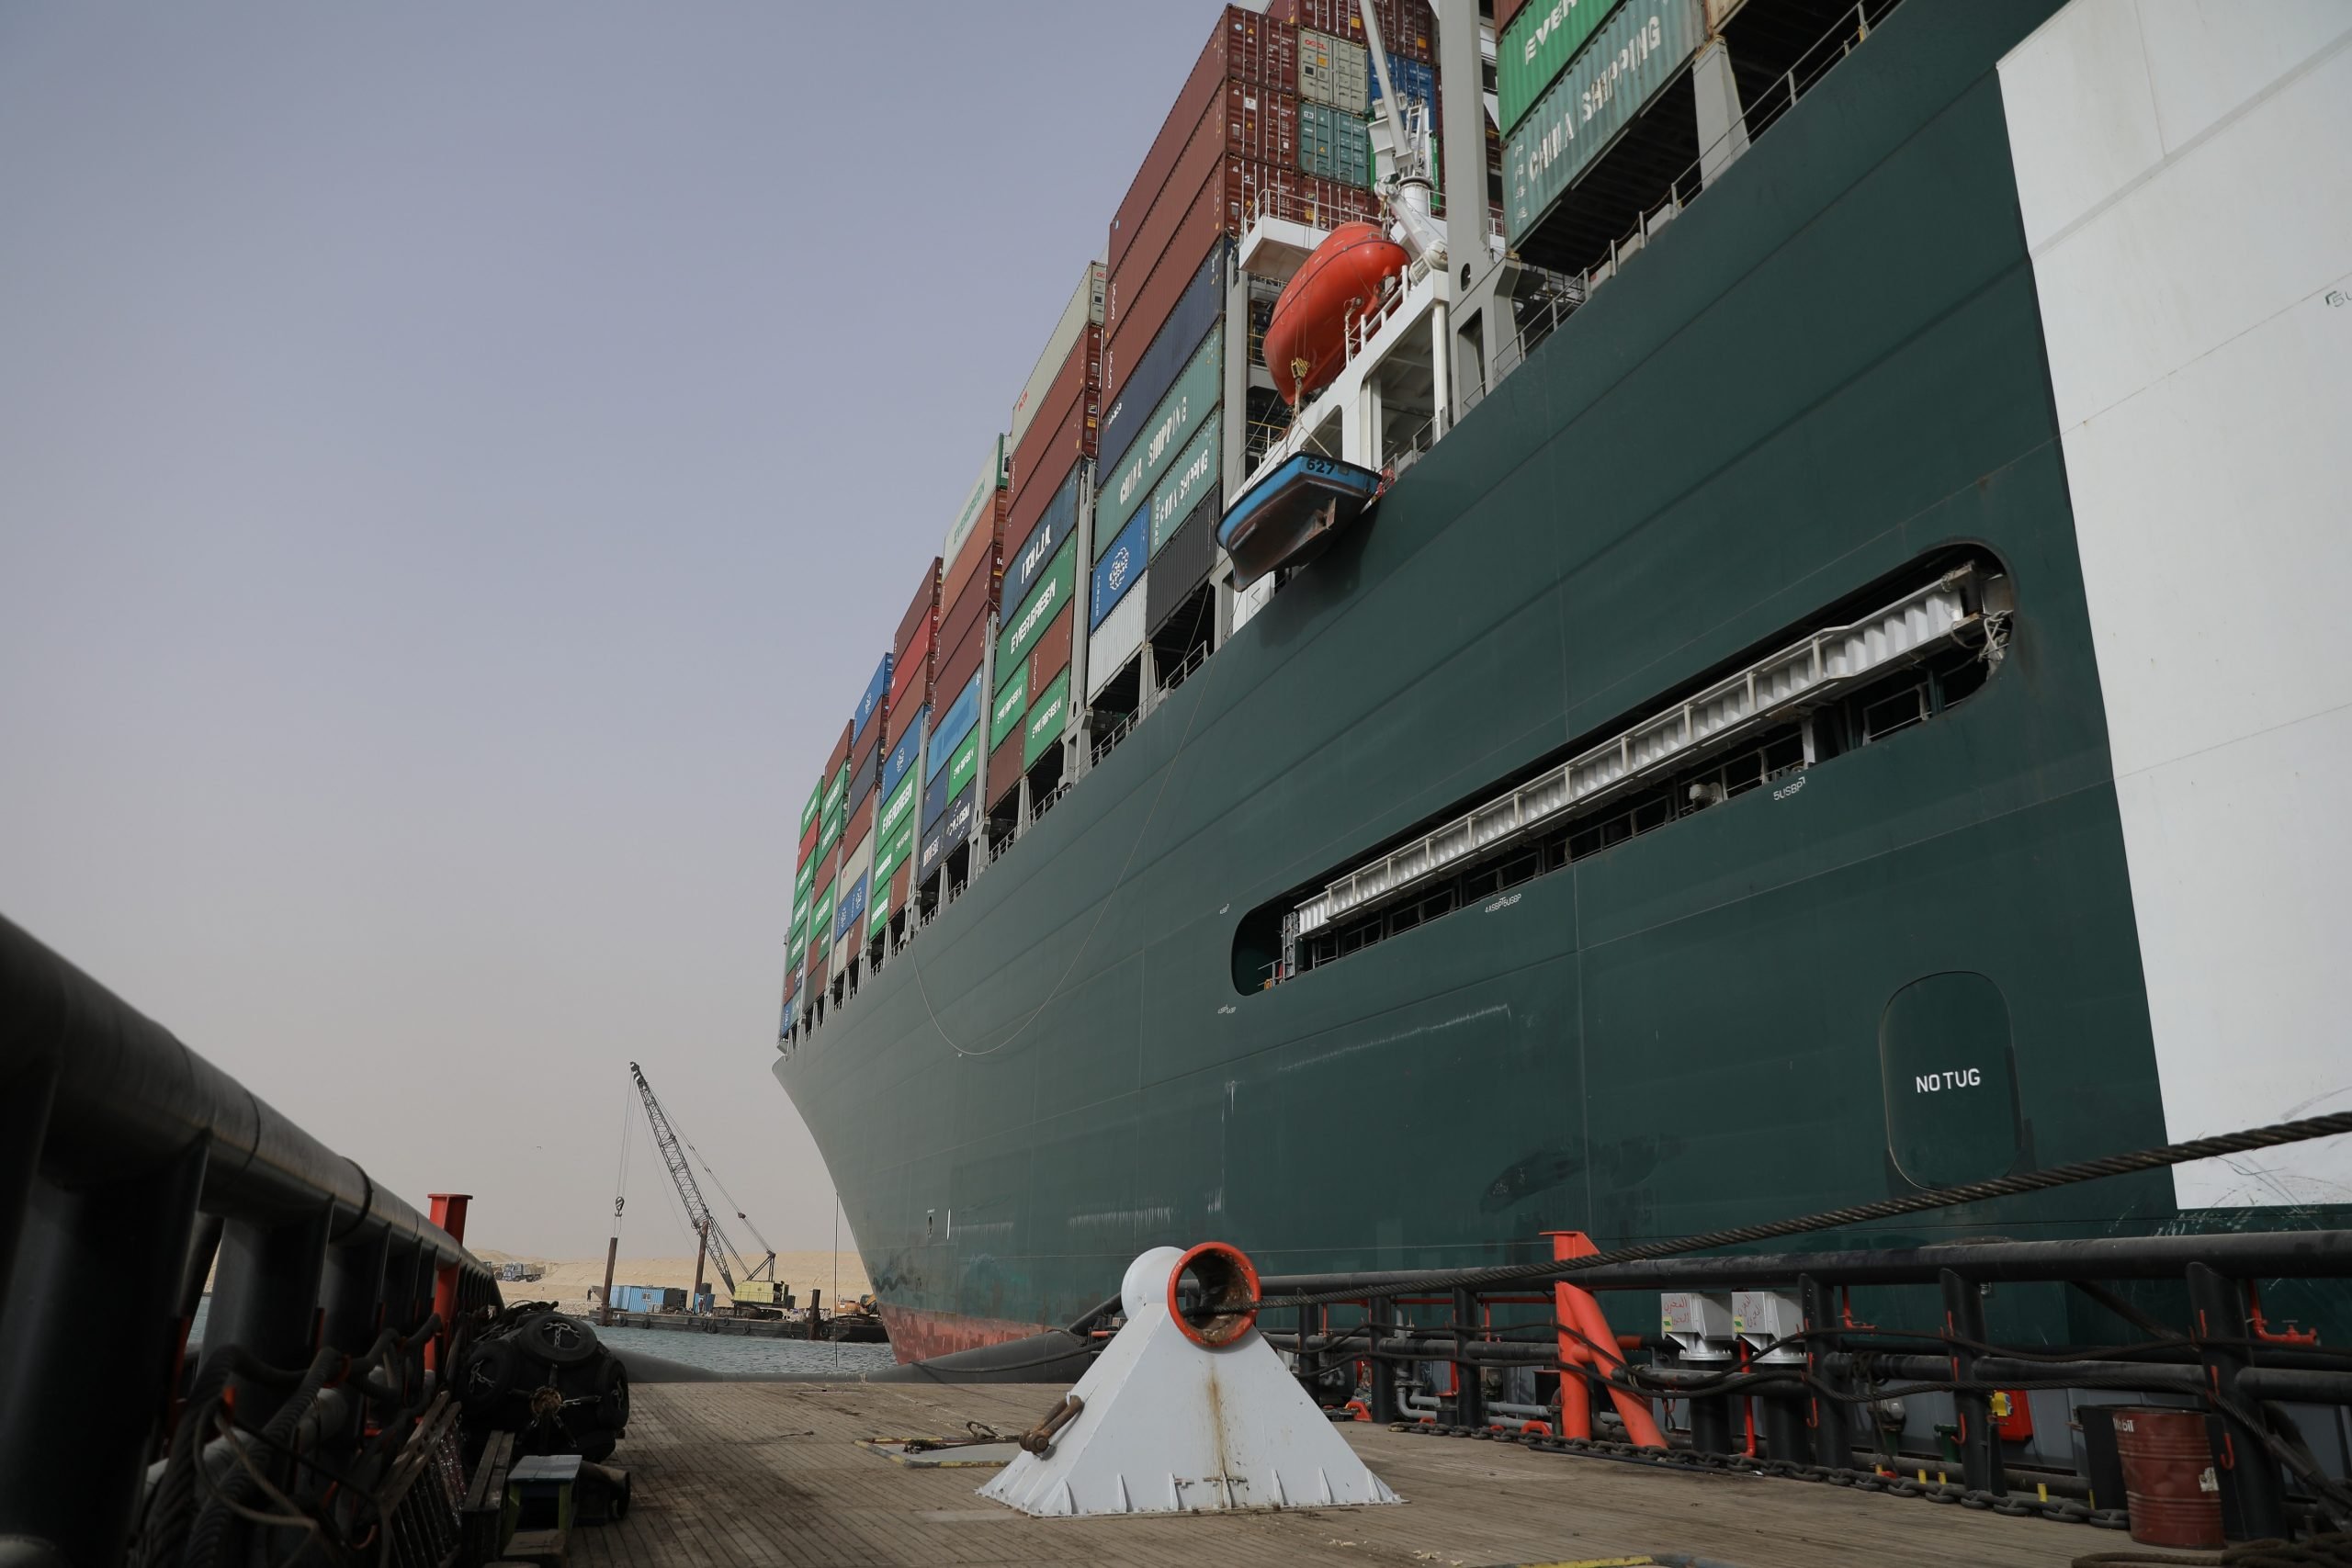 Vasul care a paralizat traficul prin Canalul Suez blochează transporturi maritime de 9,6 mld. dolari pe zi